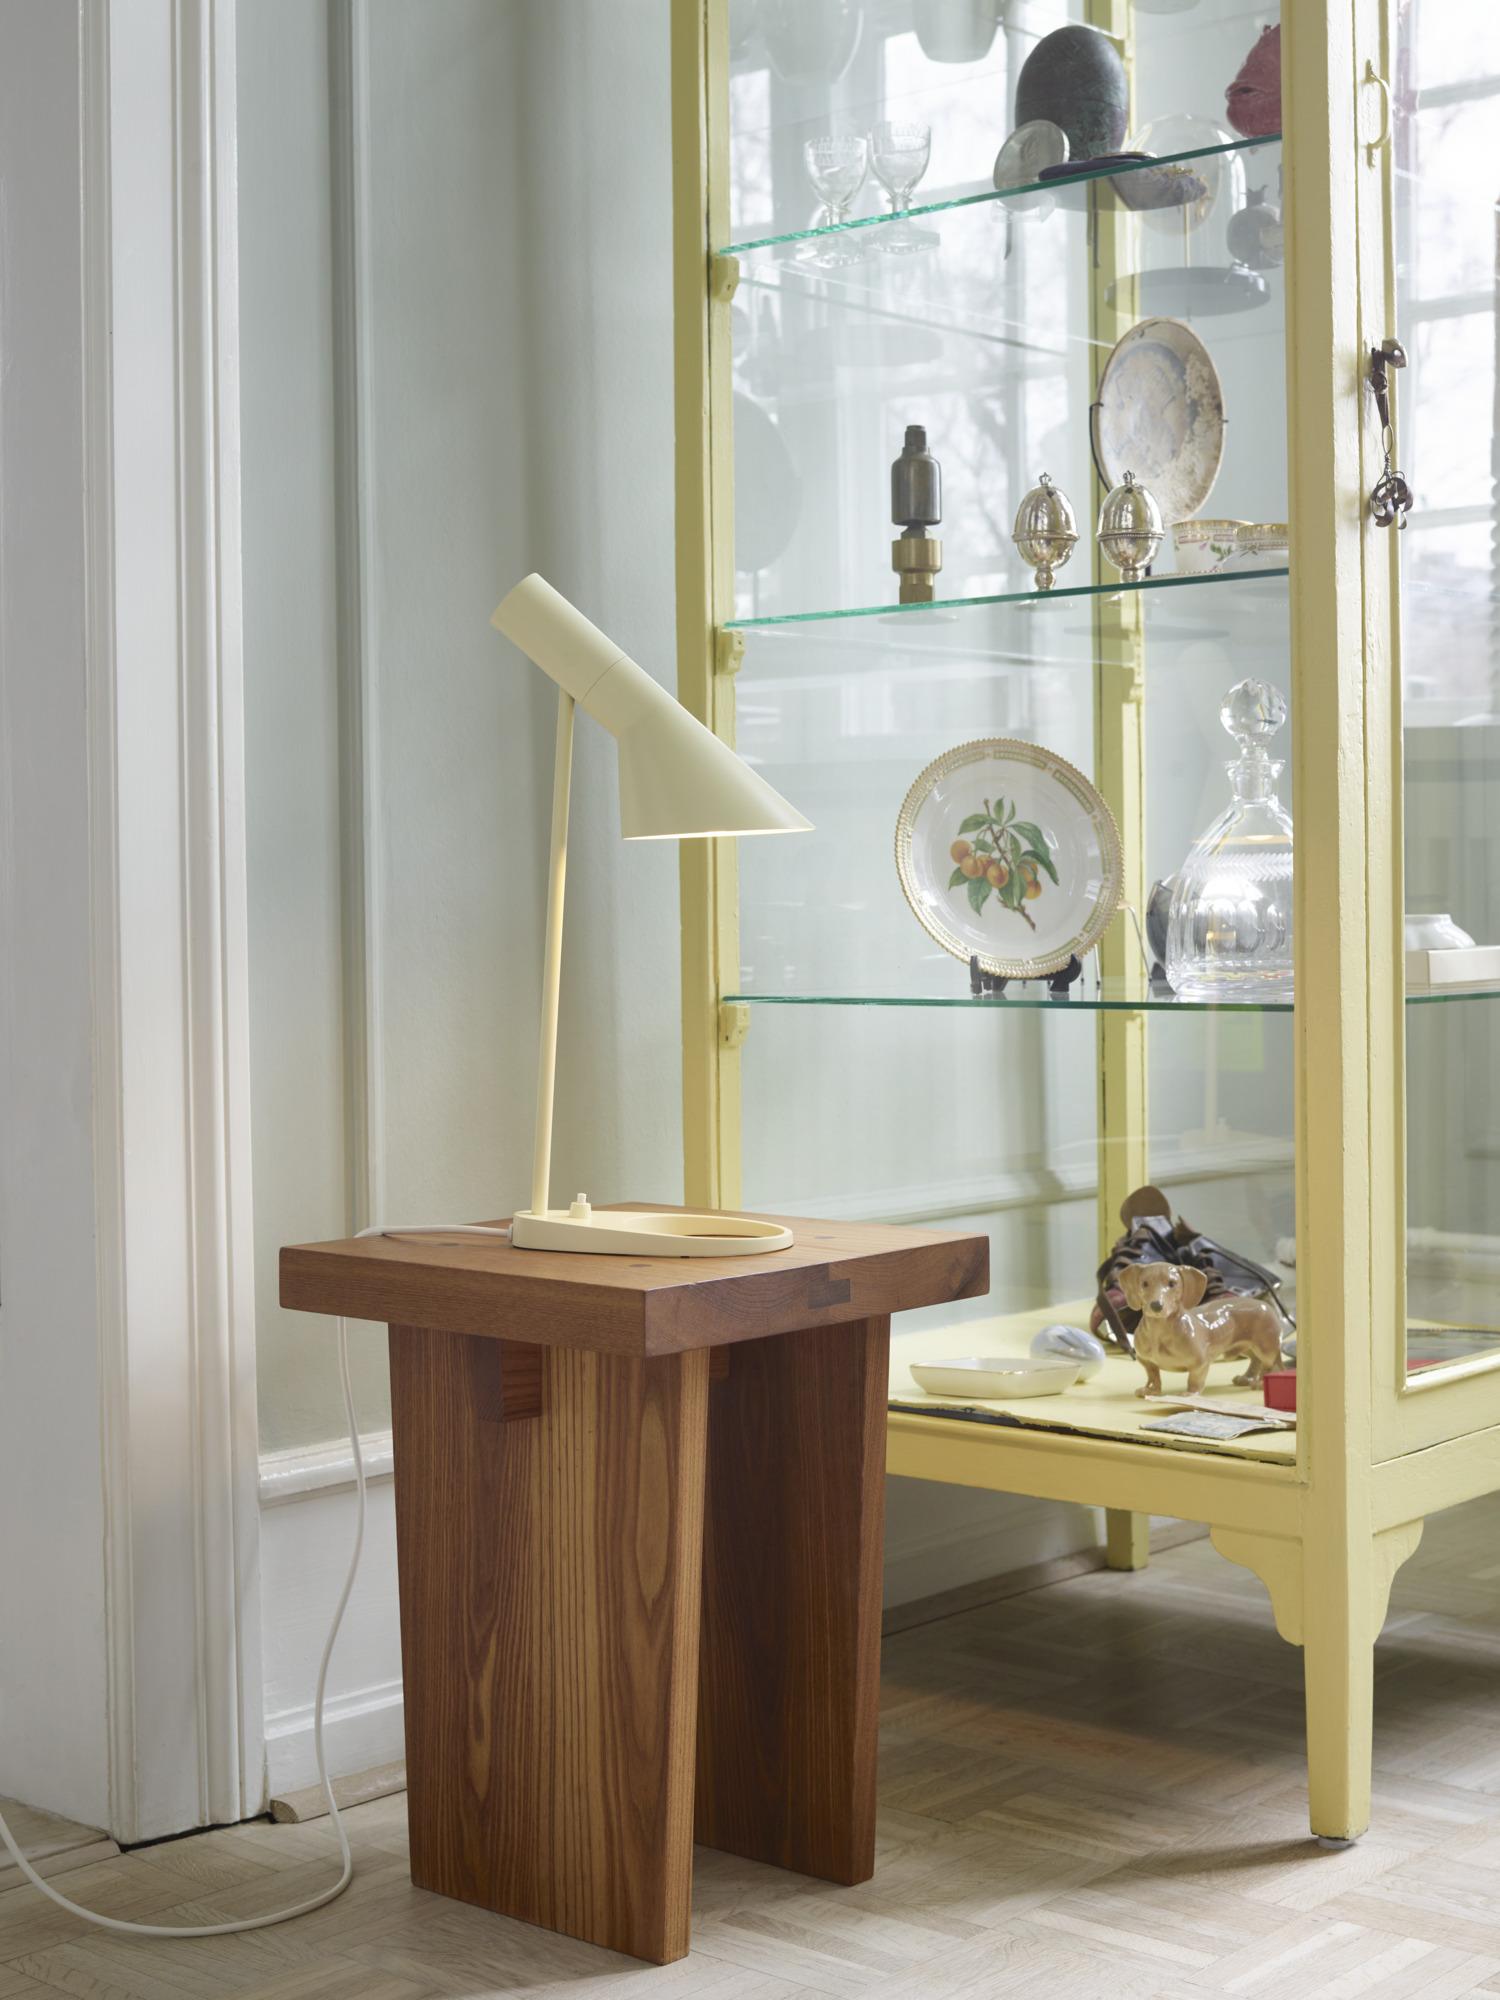 Lampe de table 'AJ Mini' de Arne Jacobsen en citron doux pour Louis Poulsen

La série AJ faisait partie de la collection de luminaires que le célèbre designer danois Arne Jacobsen a créée pour le premier hôtel SAS Royal en 1957. Aujourd'hui, ses